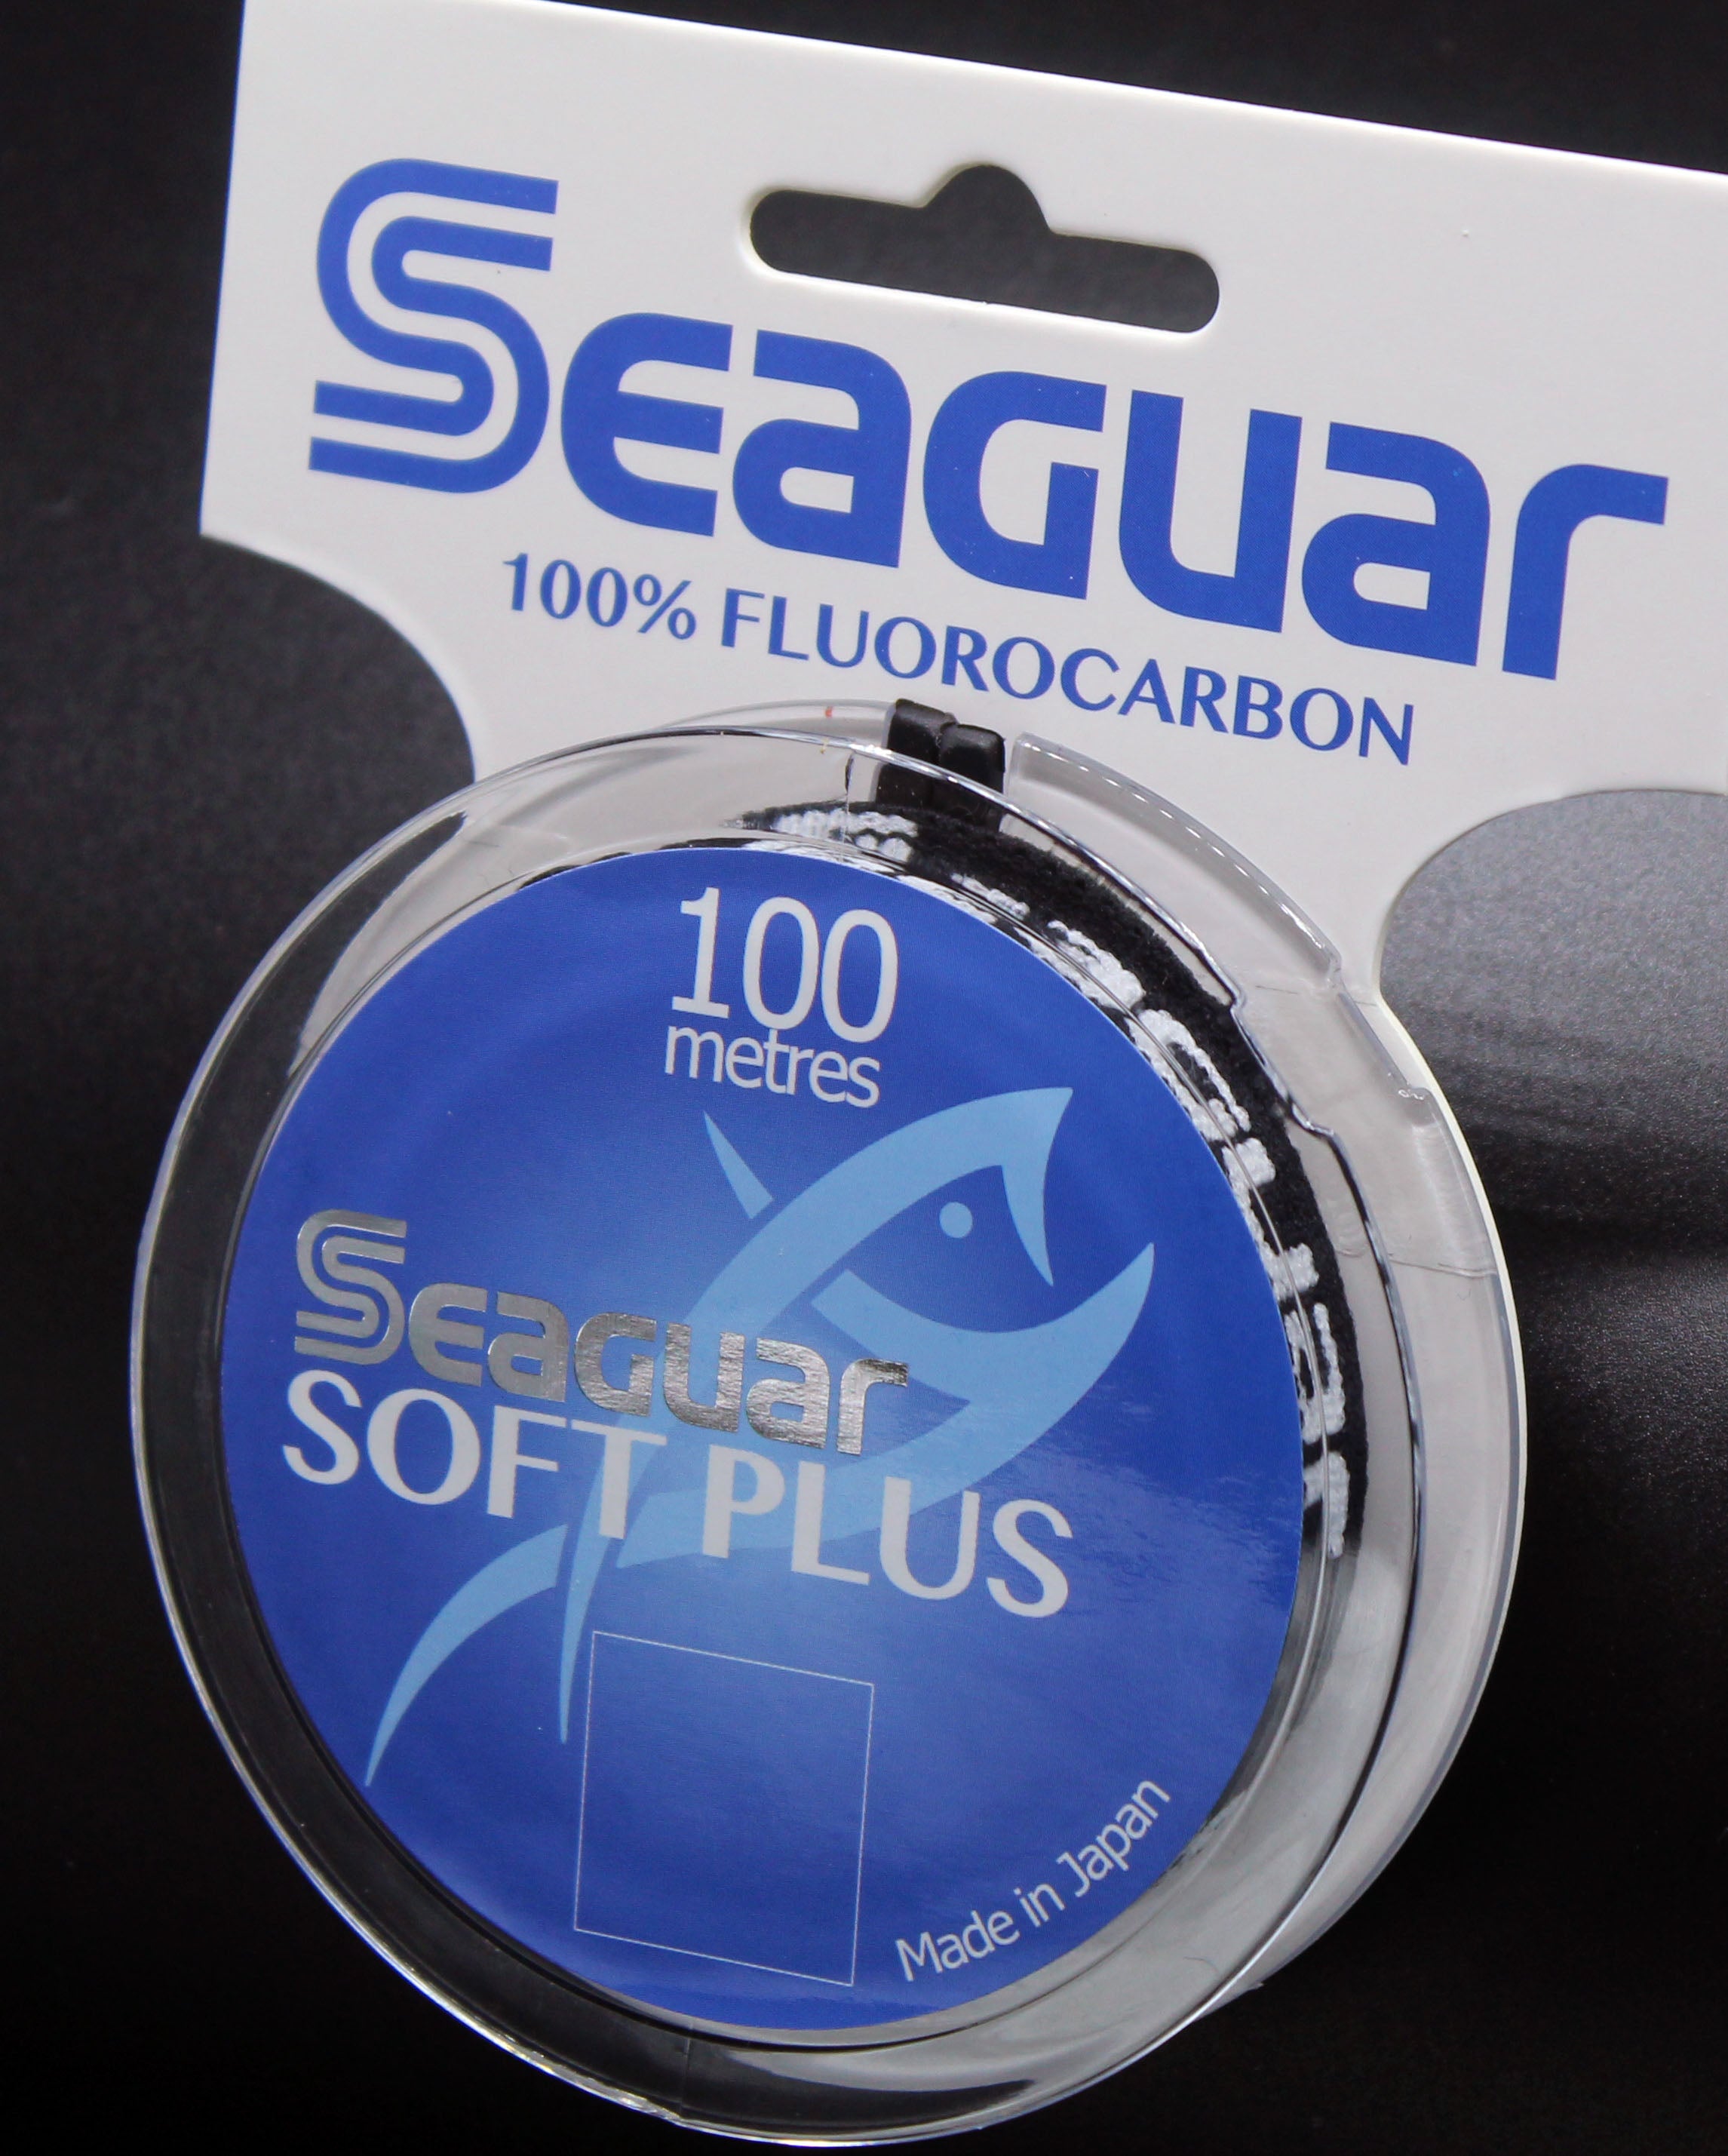 Seaguar Soft Plus Fluorocarbon Fishing Line